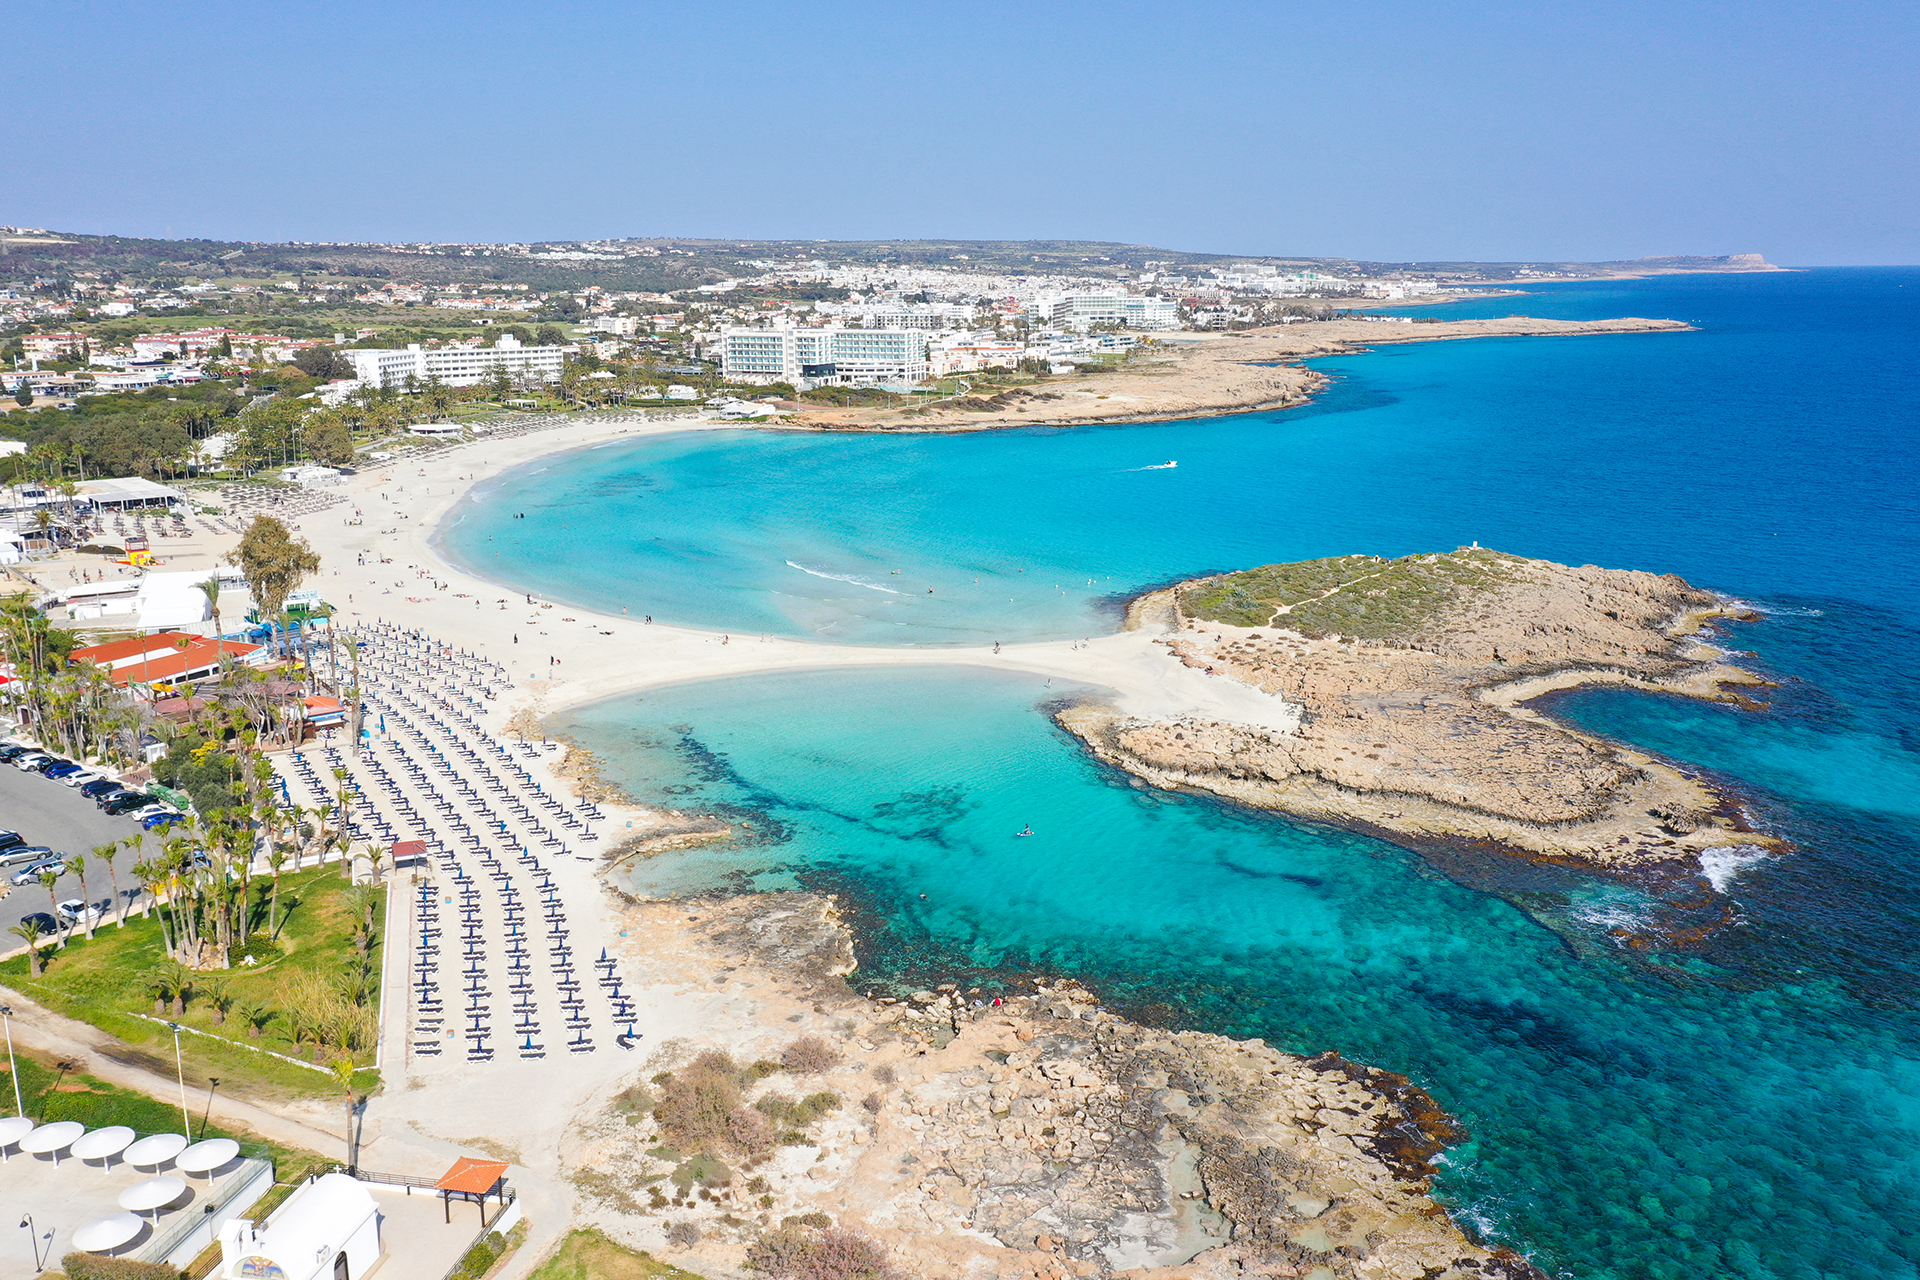 Nissi beach named among top 25 beaches worldwide by TripAdvisor